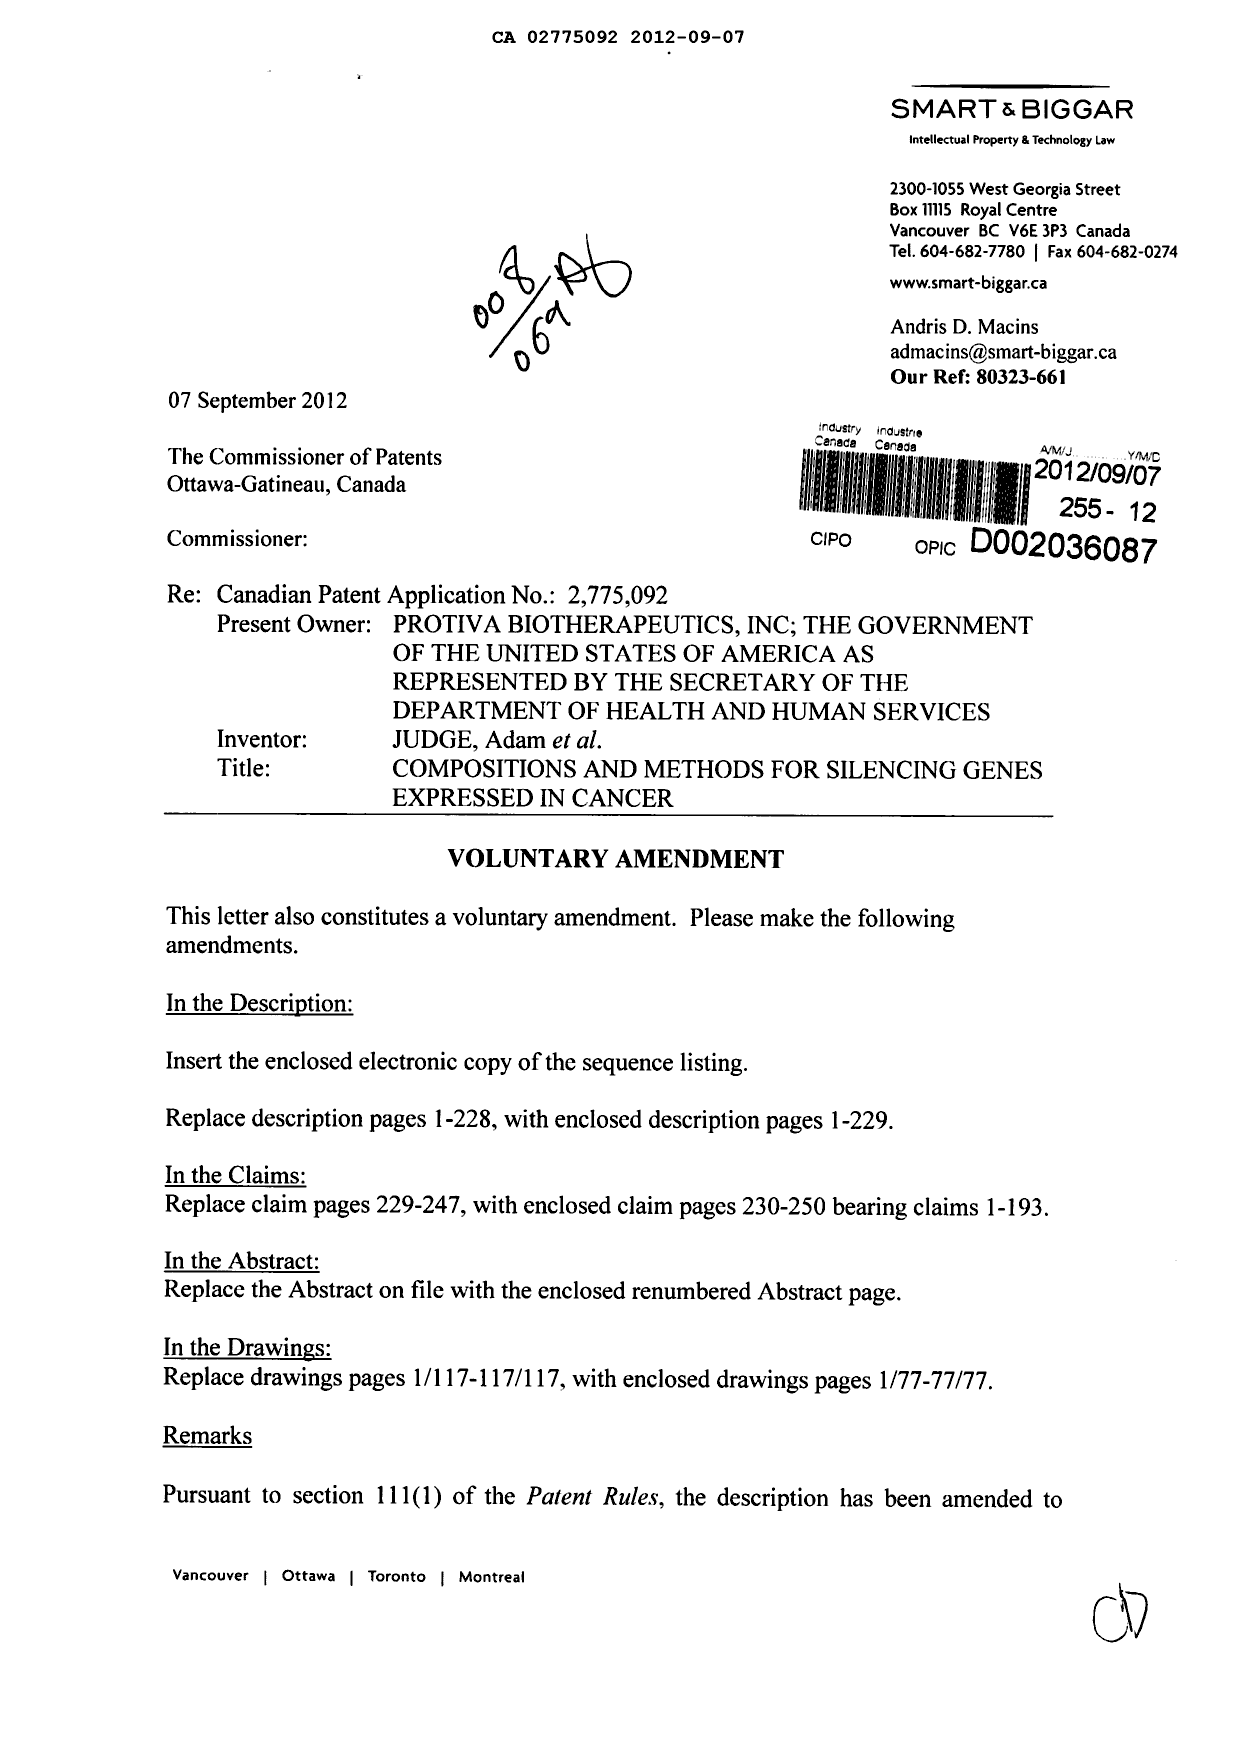 Document de brevet canadien 2775092. Poursuite-Amendment 20120907. Image 1 de 330